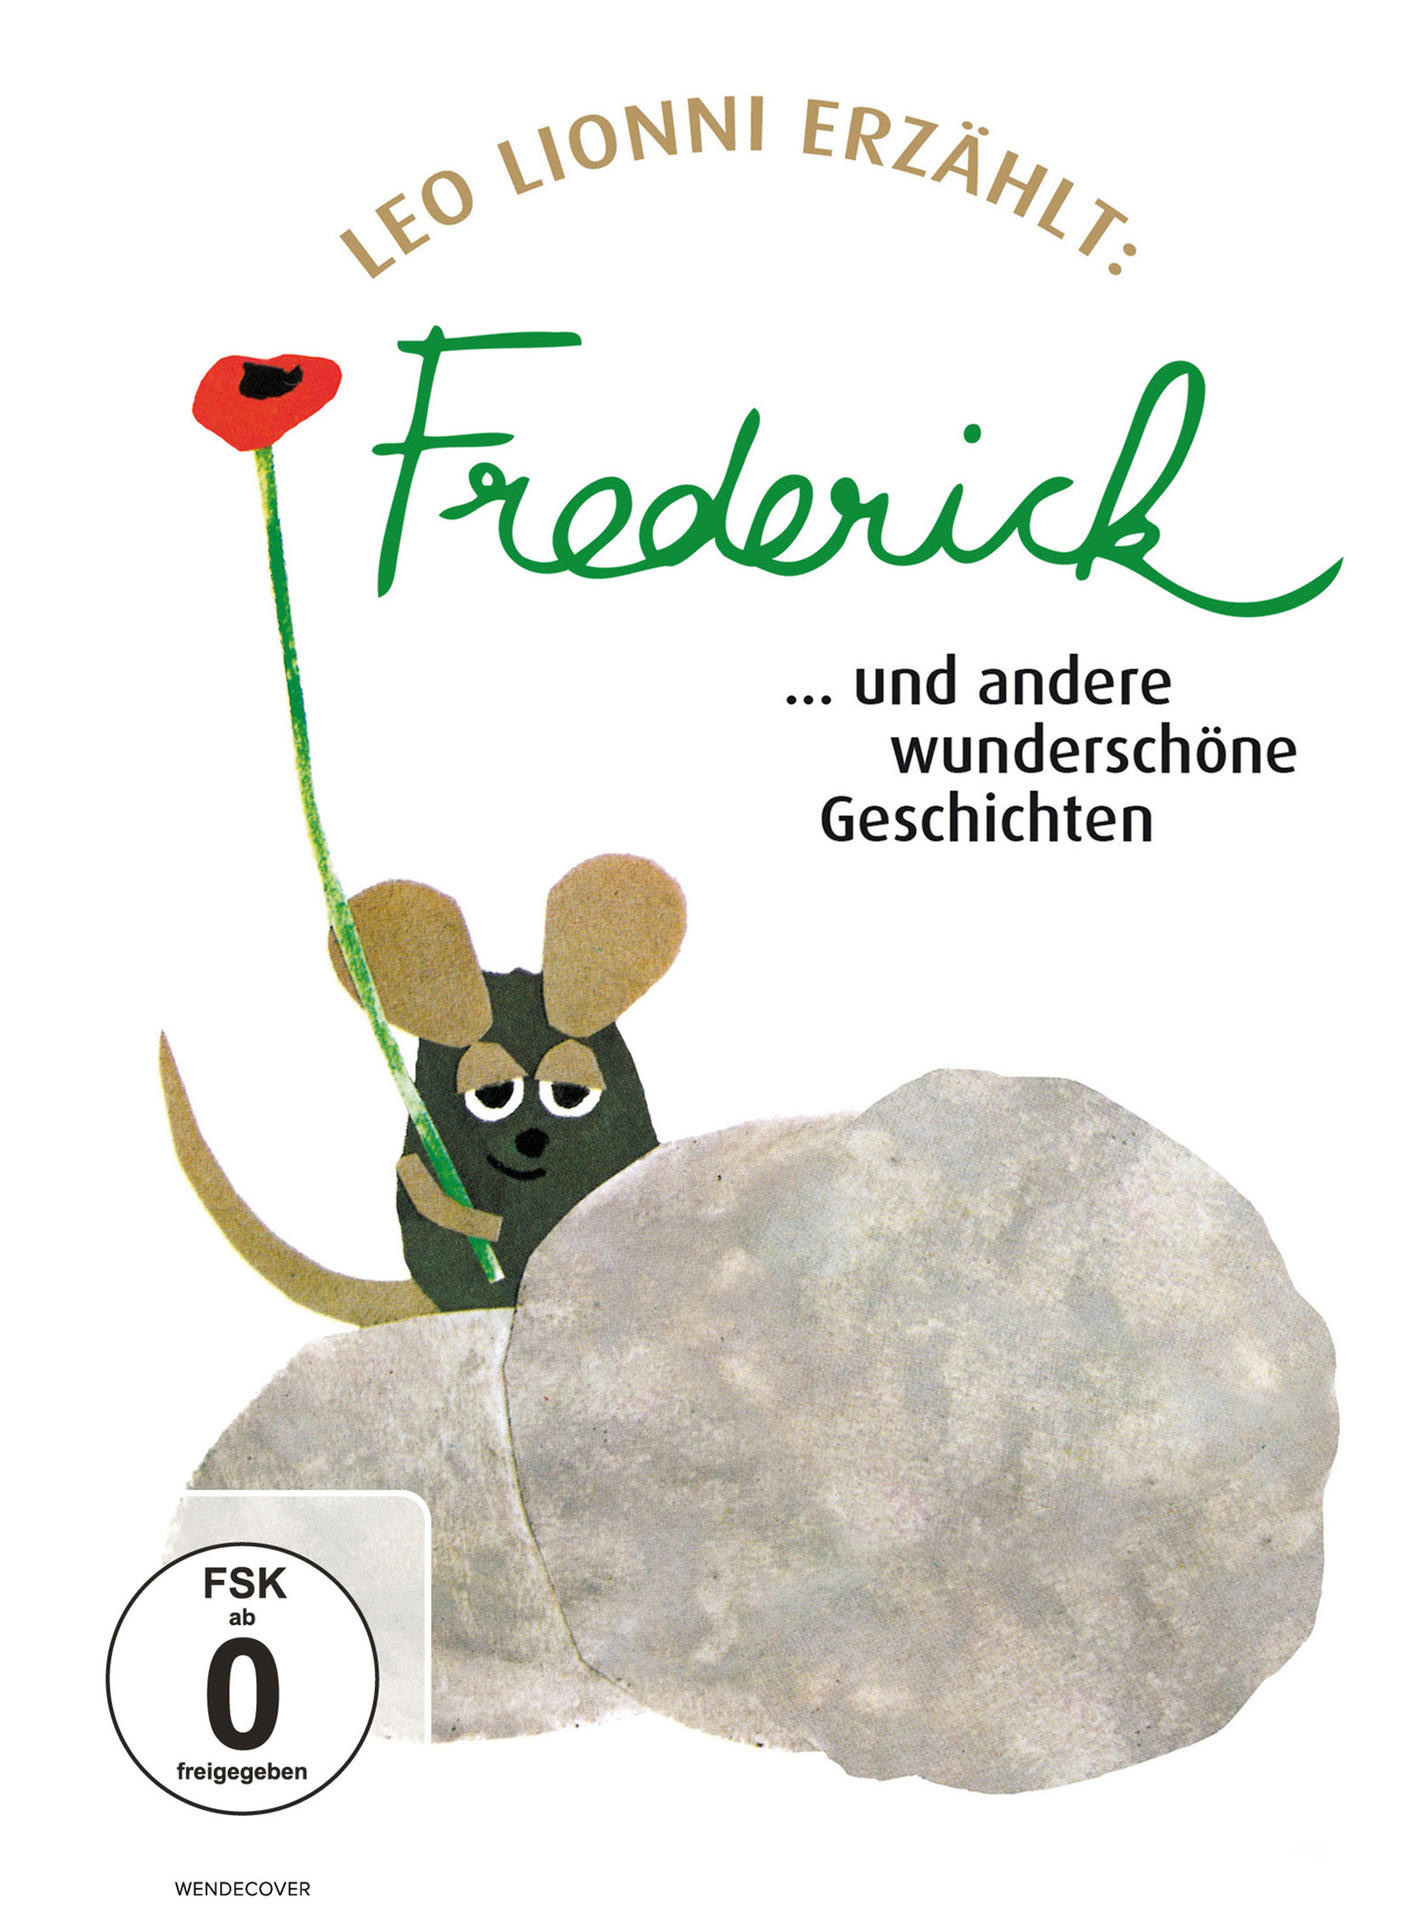 Frederick... und wunderschöne andere DVD Geschichten